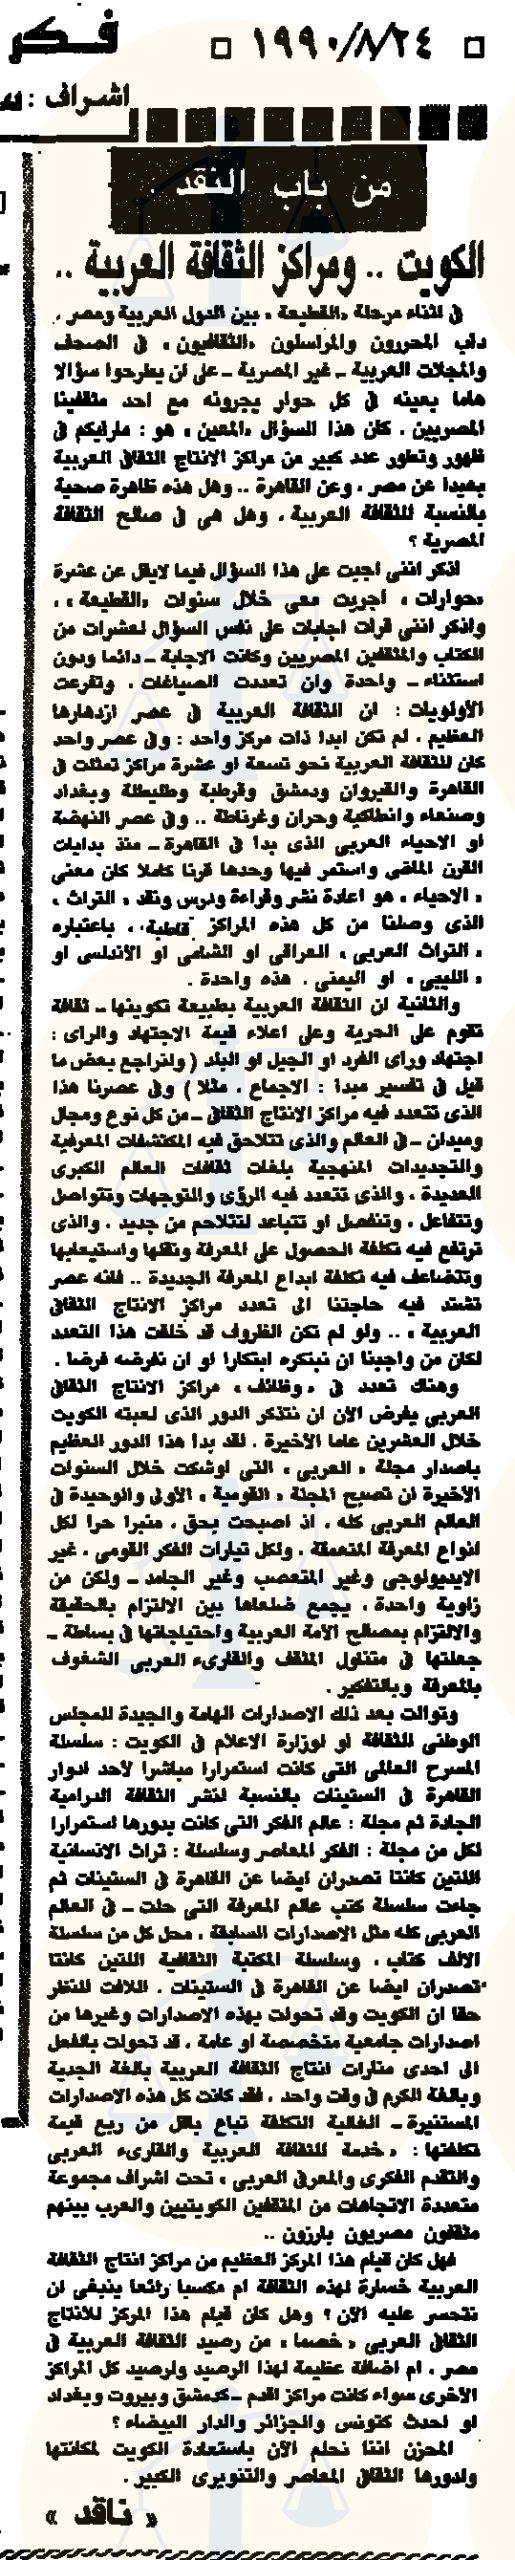 مقال في جريدة الأهرام عن مؤسسات الثقافة في الكويت